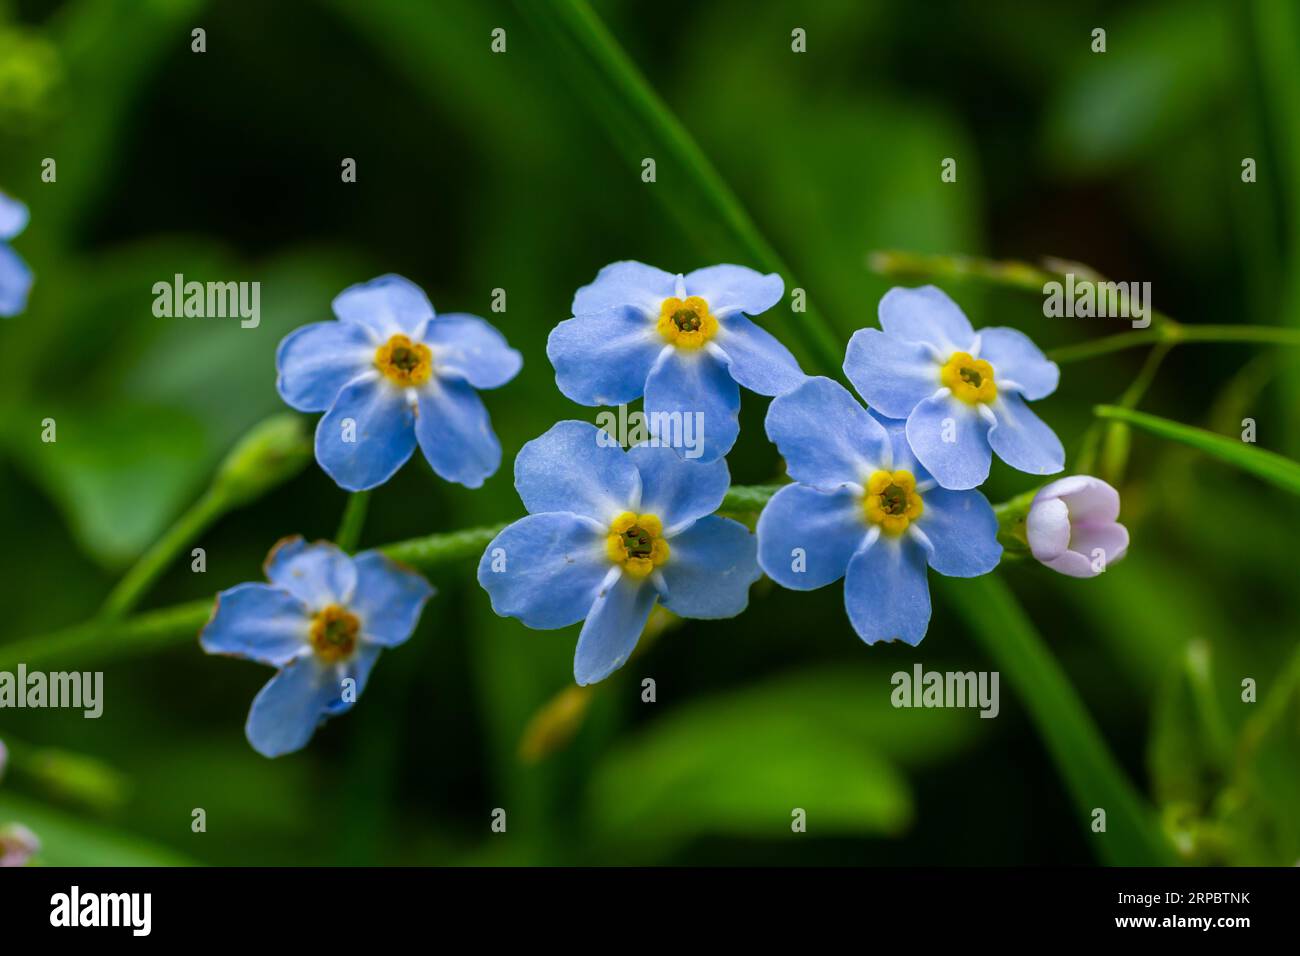 Bleu peu oubliez-moi pas de fleurs sur fond vert lors d'une journée ensoleillée en macro photographie printanière. Fleurs sauvages Myosotis aux pétales bleus Banque D'Images